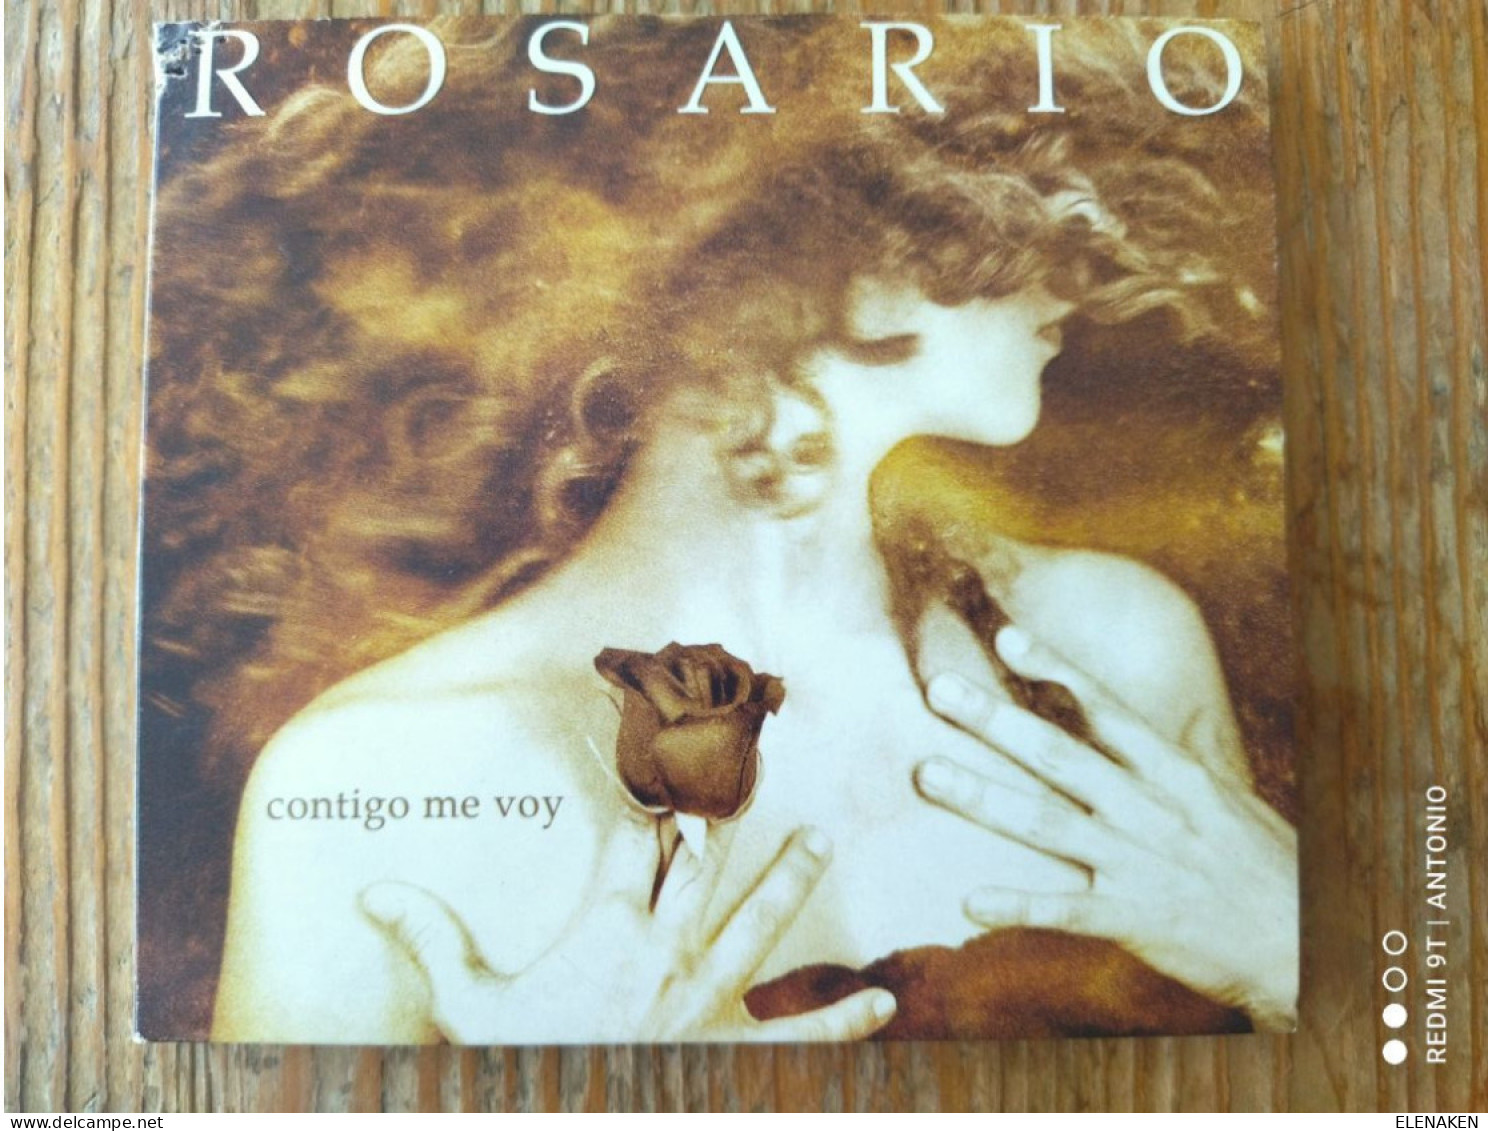 CDs De Música: ROSARIO FLORES .CONTIGO ME VOY .CD SONY 2006 NUEVO FLAMENCO POP RUMBAS - SIN APENAS USO, FOTO REAL - Autres - Musique Espagnole